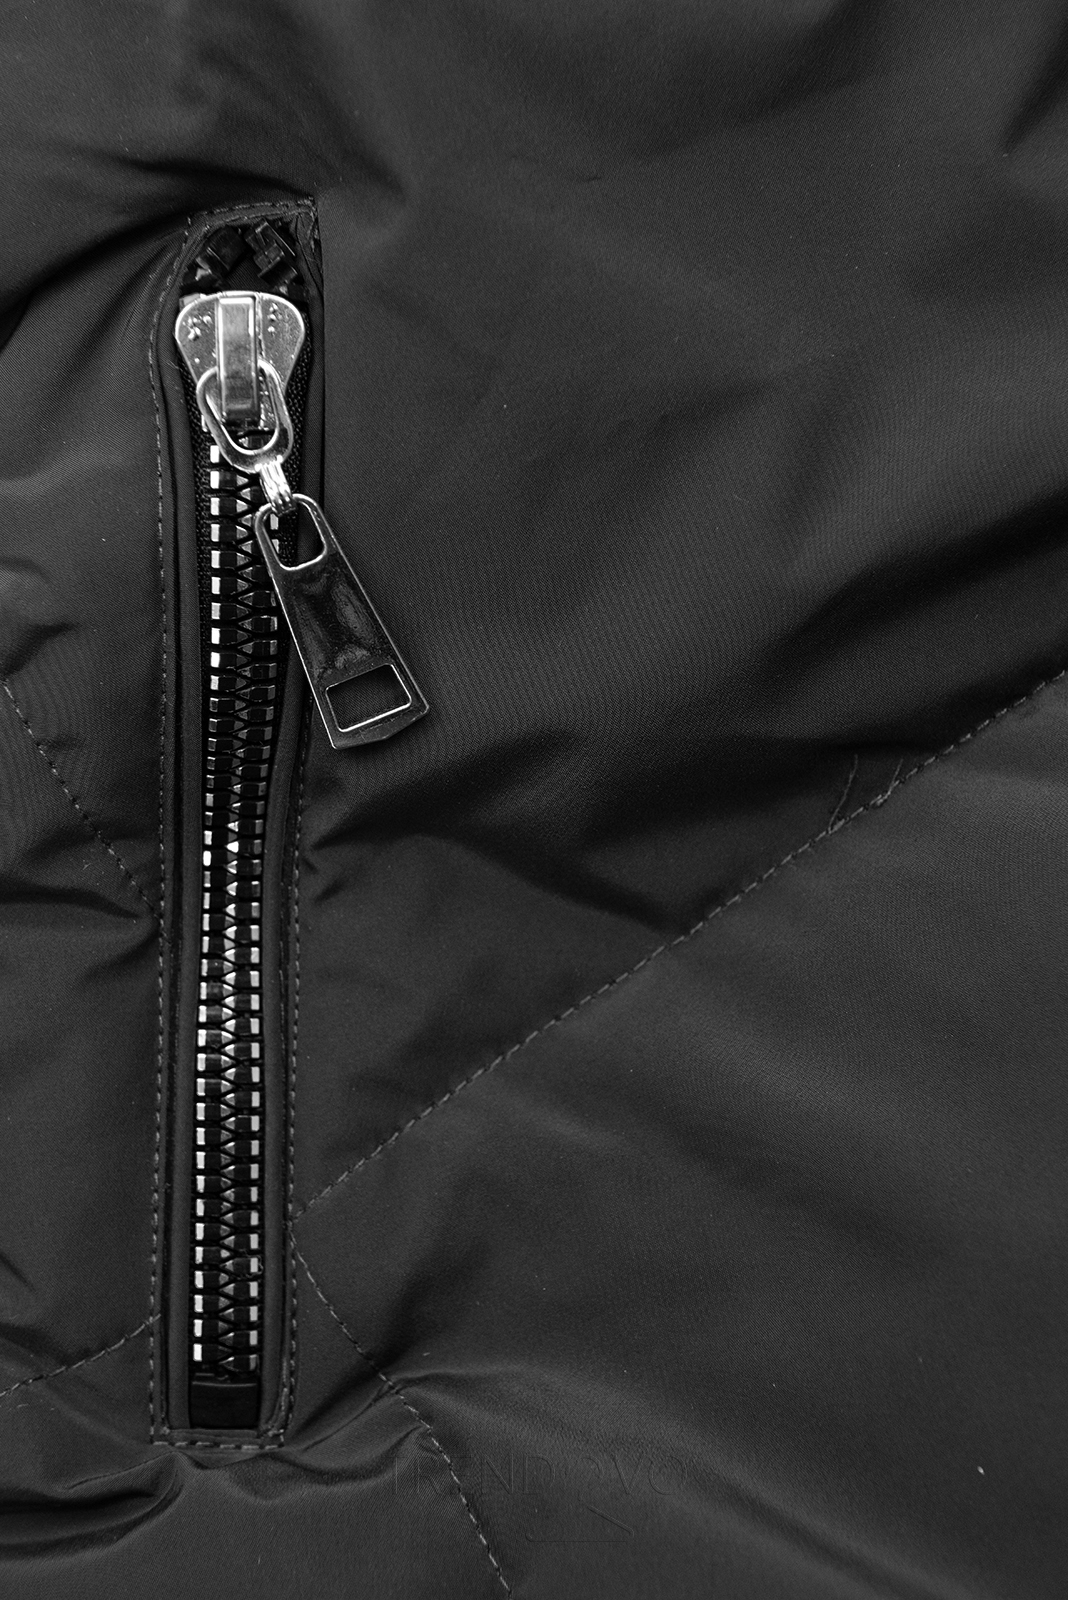 Čierna/sivá zimná bunda so strieborným lemom